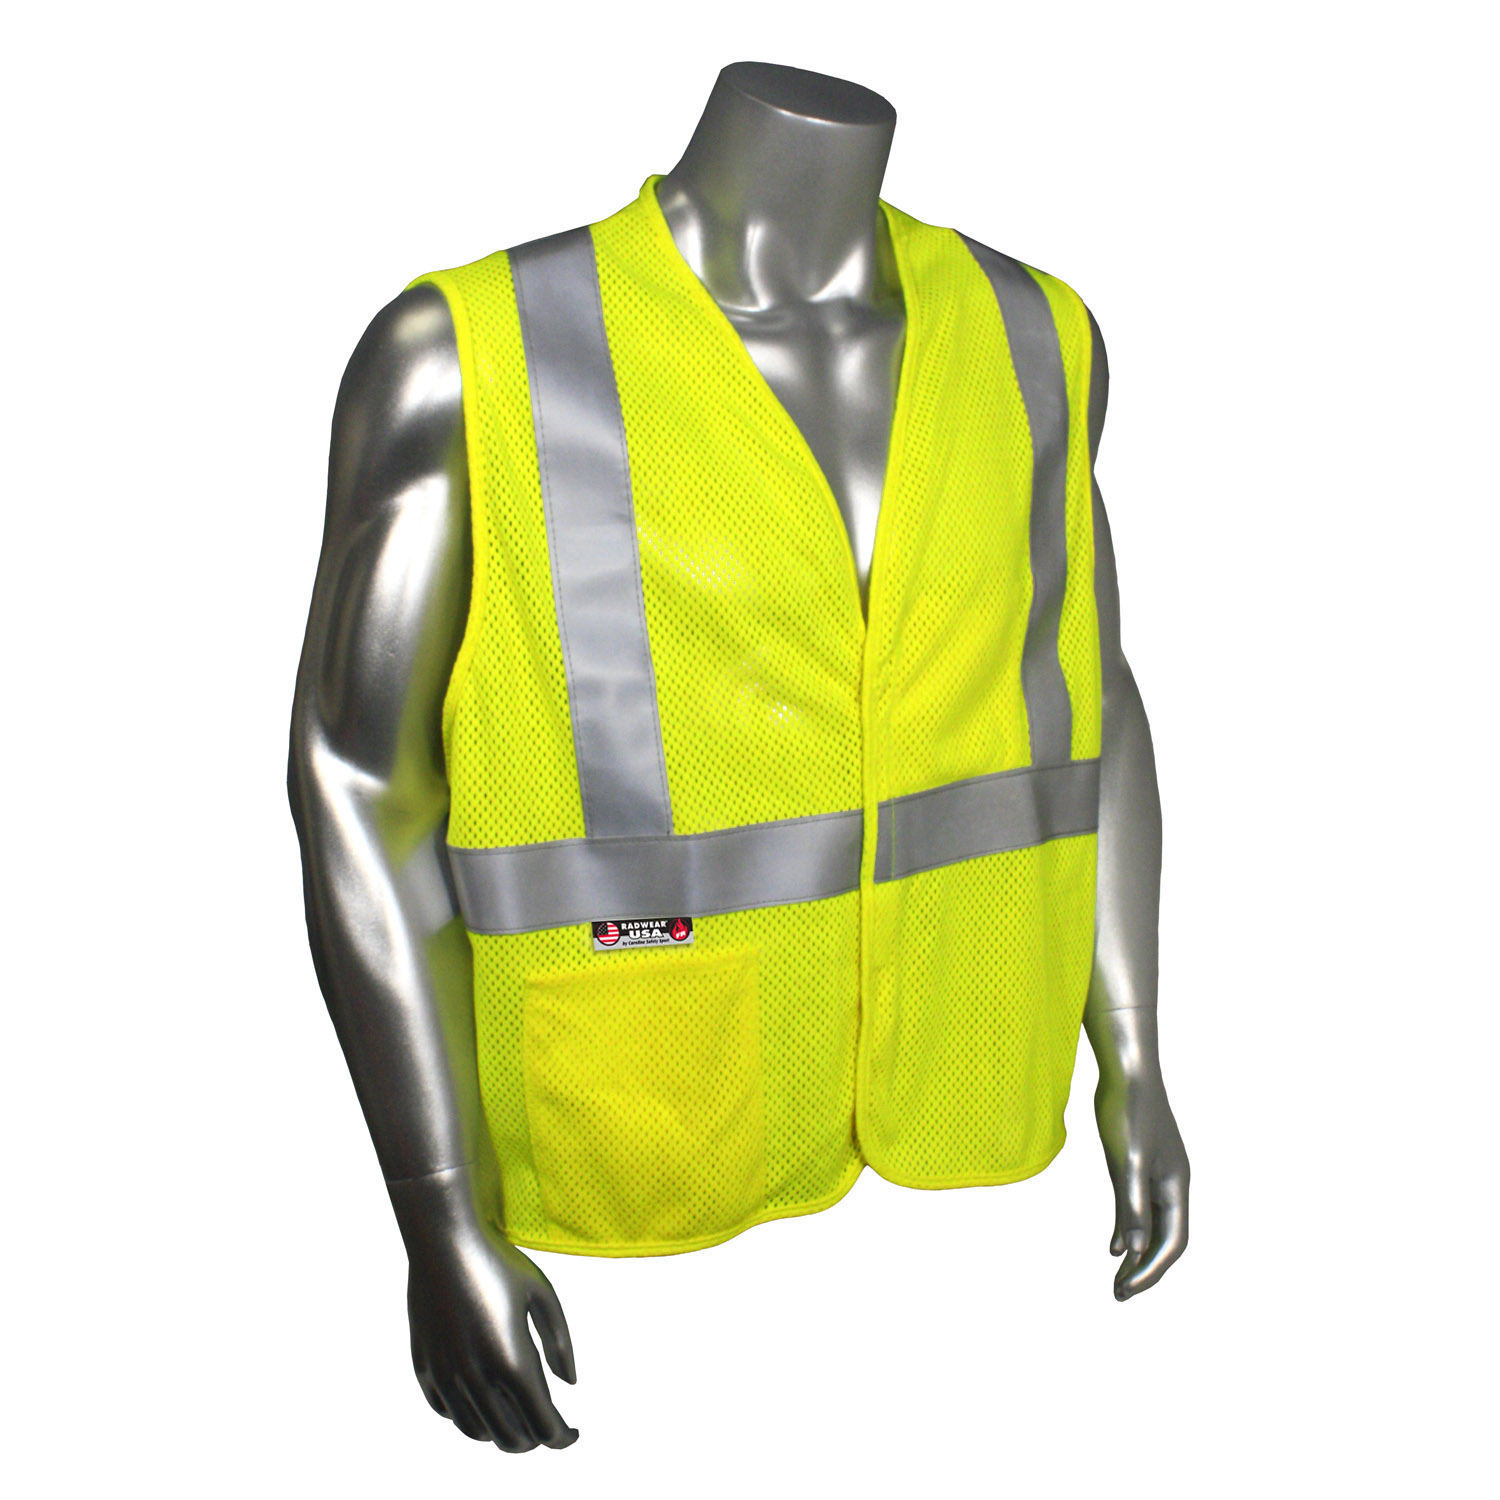 SV97-2VGMFR Premium Modacrylic FR Class 2 Mesh Safety Vest - Green - Size L - Safety Vests